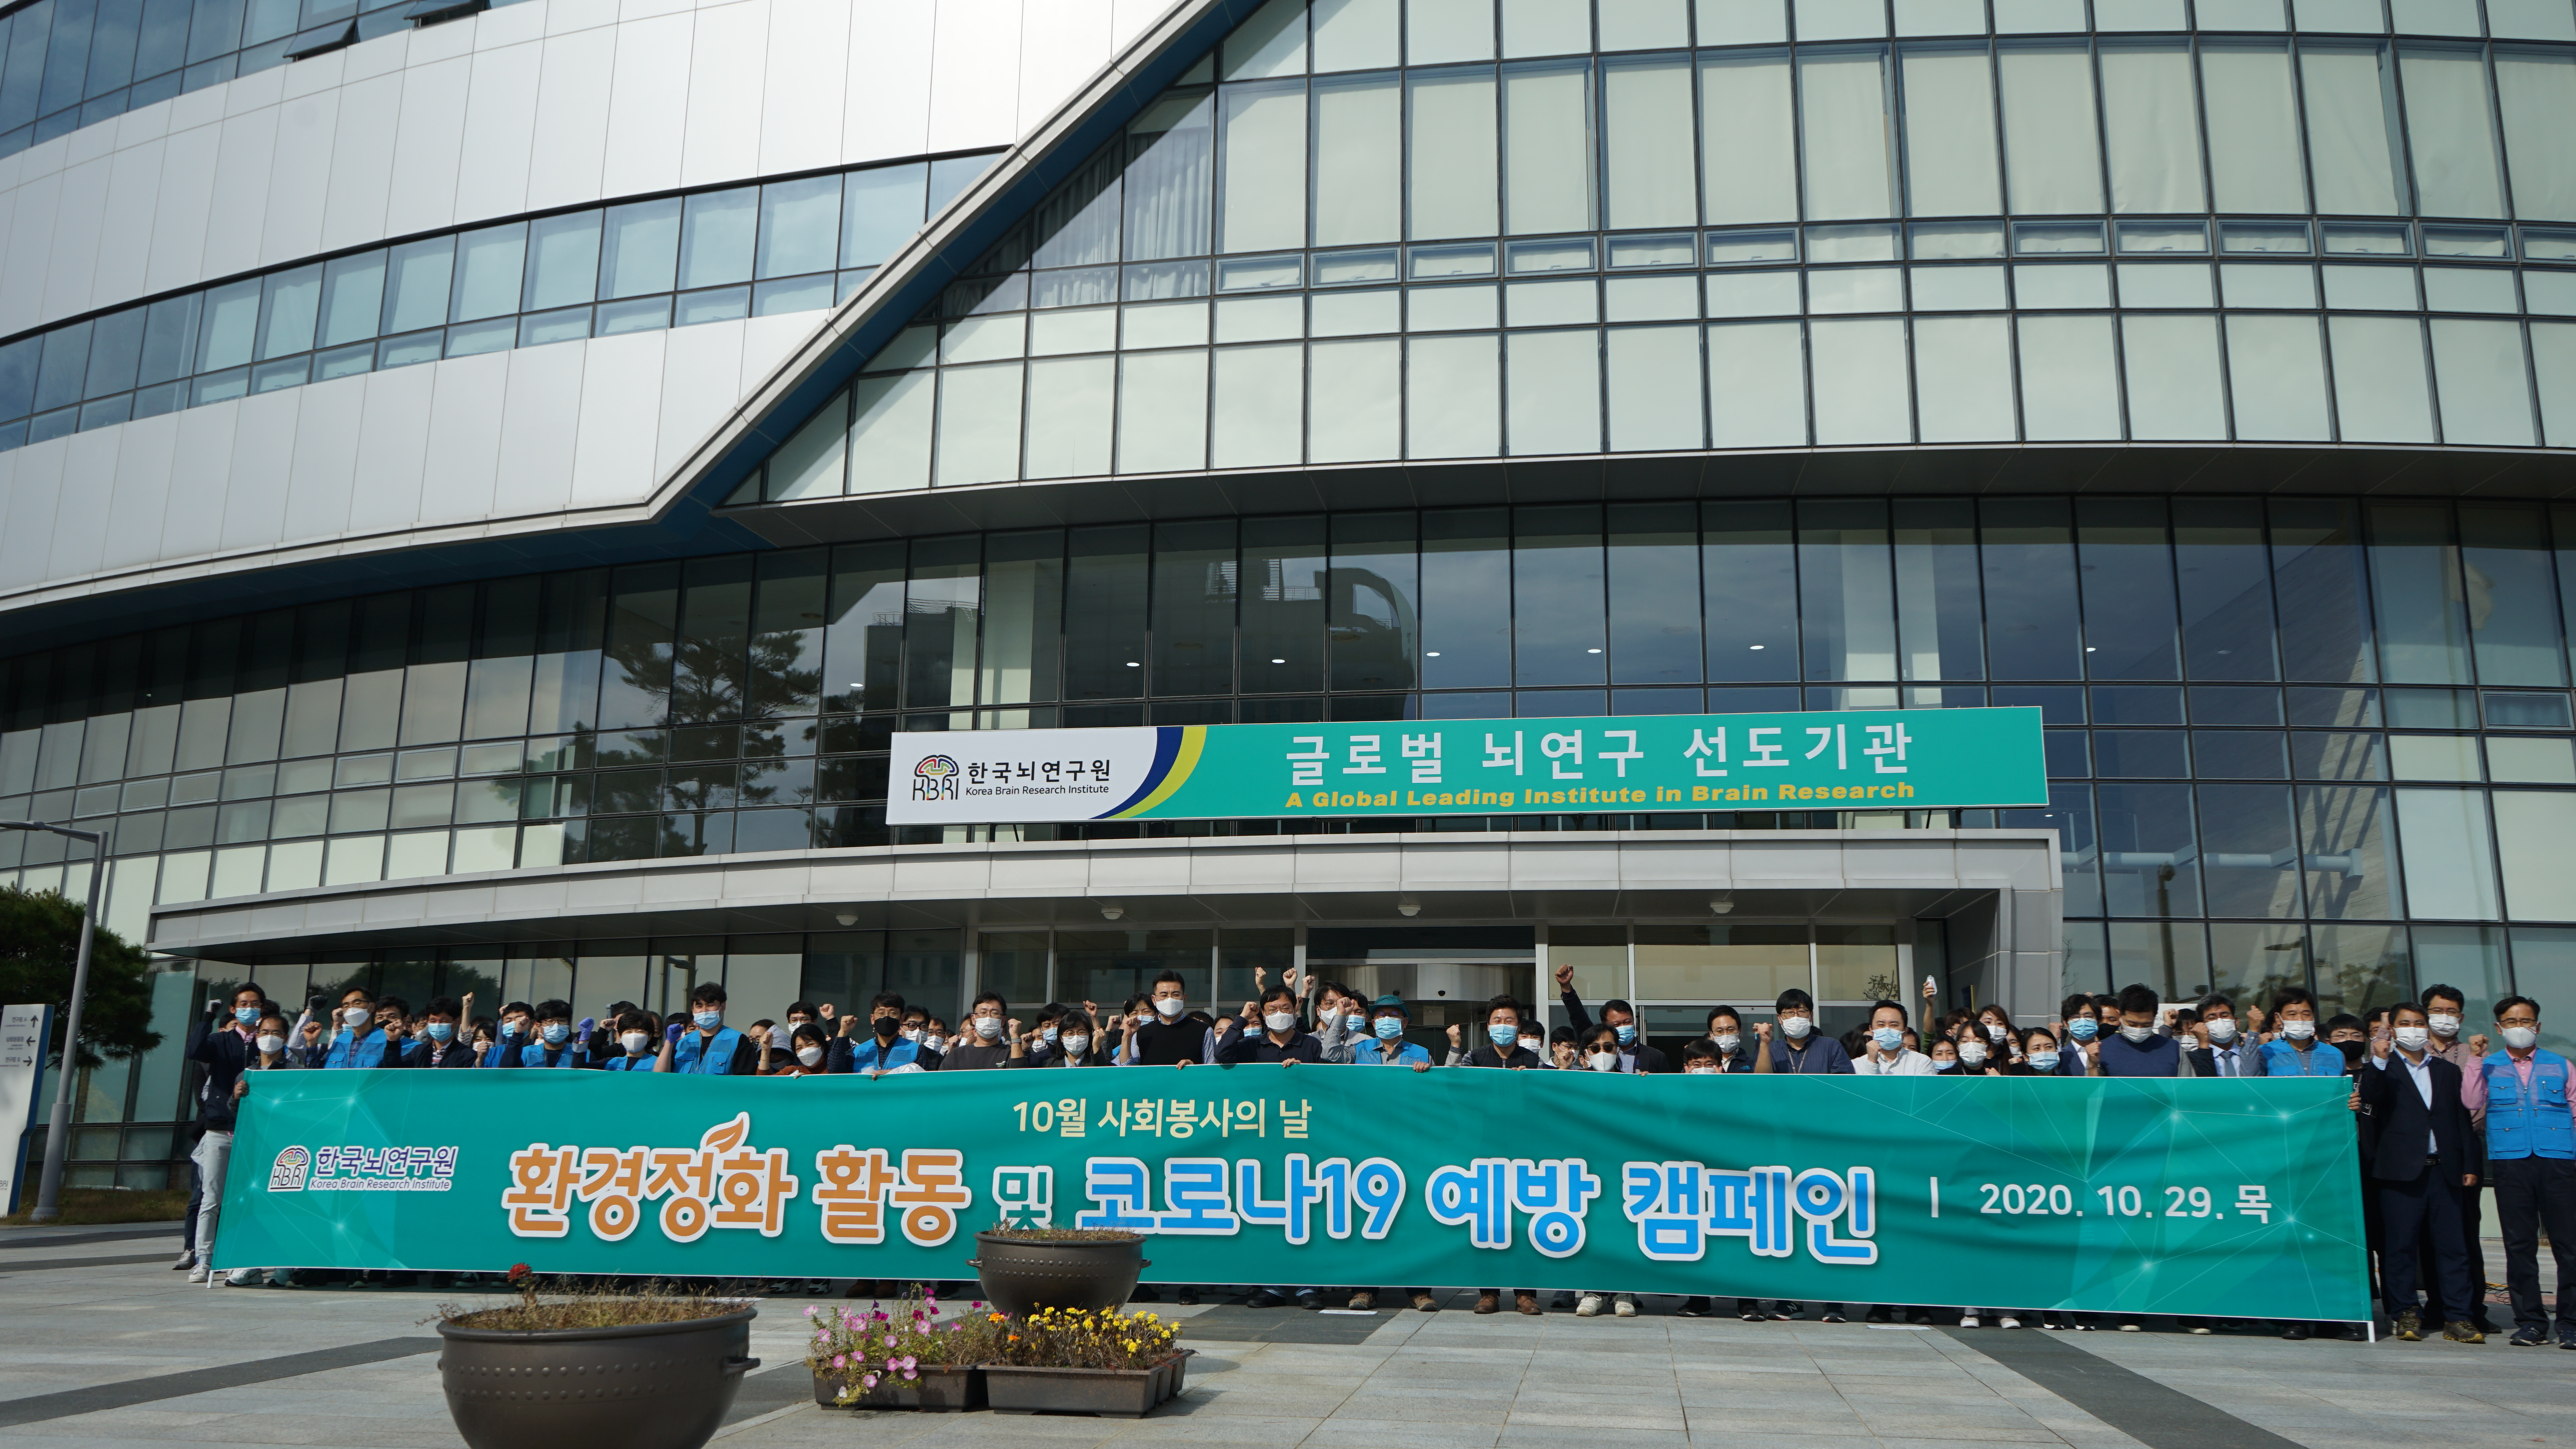 한국뇌연구원, 코로나19 예방 캠페인 및 대구혁신도시 일대 환경정화 활동